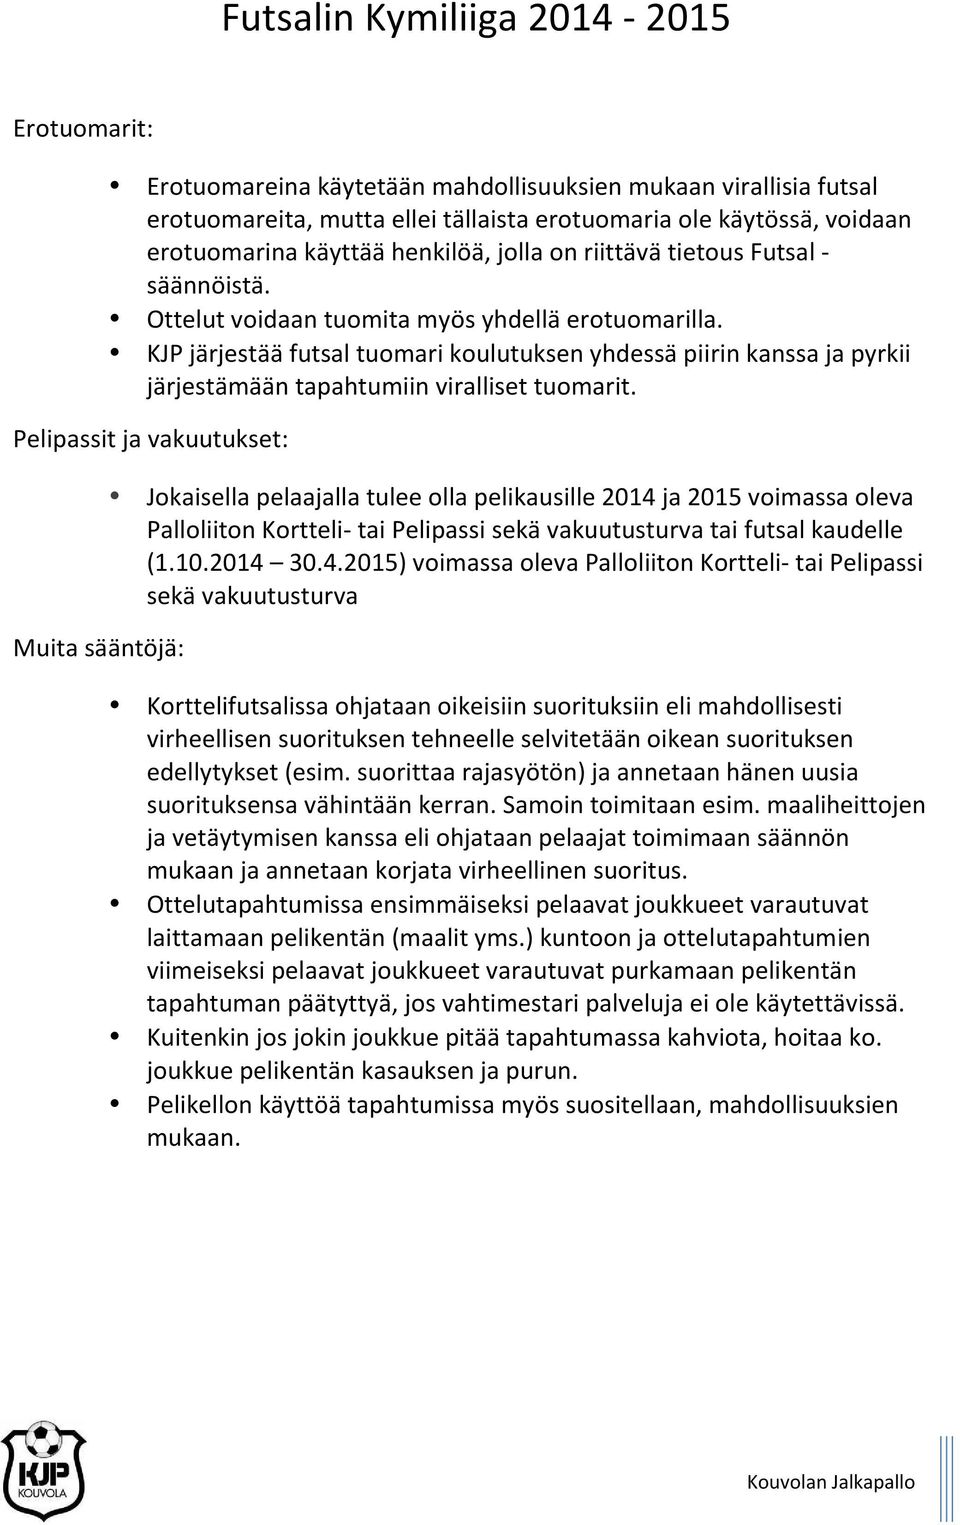 Pelipassit ja vakuutukset: Muita sääntöjä: Jokaisella pelaajalla tulee olla pelikausille 2014 ja 2015 voimassa oleva Palloliiton Kortteli- tai Pelipassi sekä vakuutusturva tai futsal kaudelle (1.10.